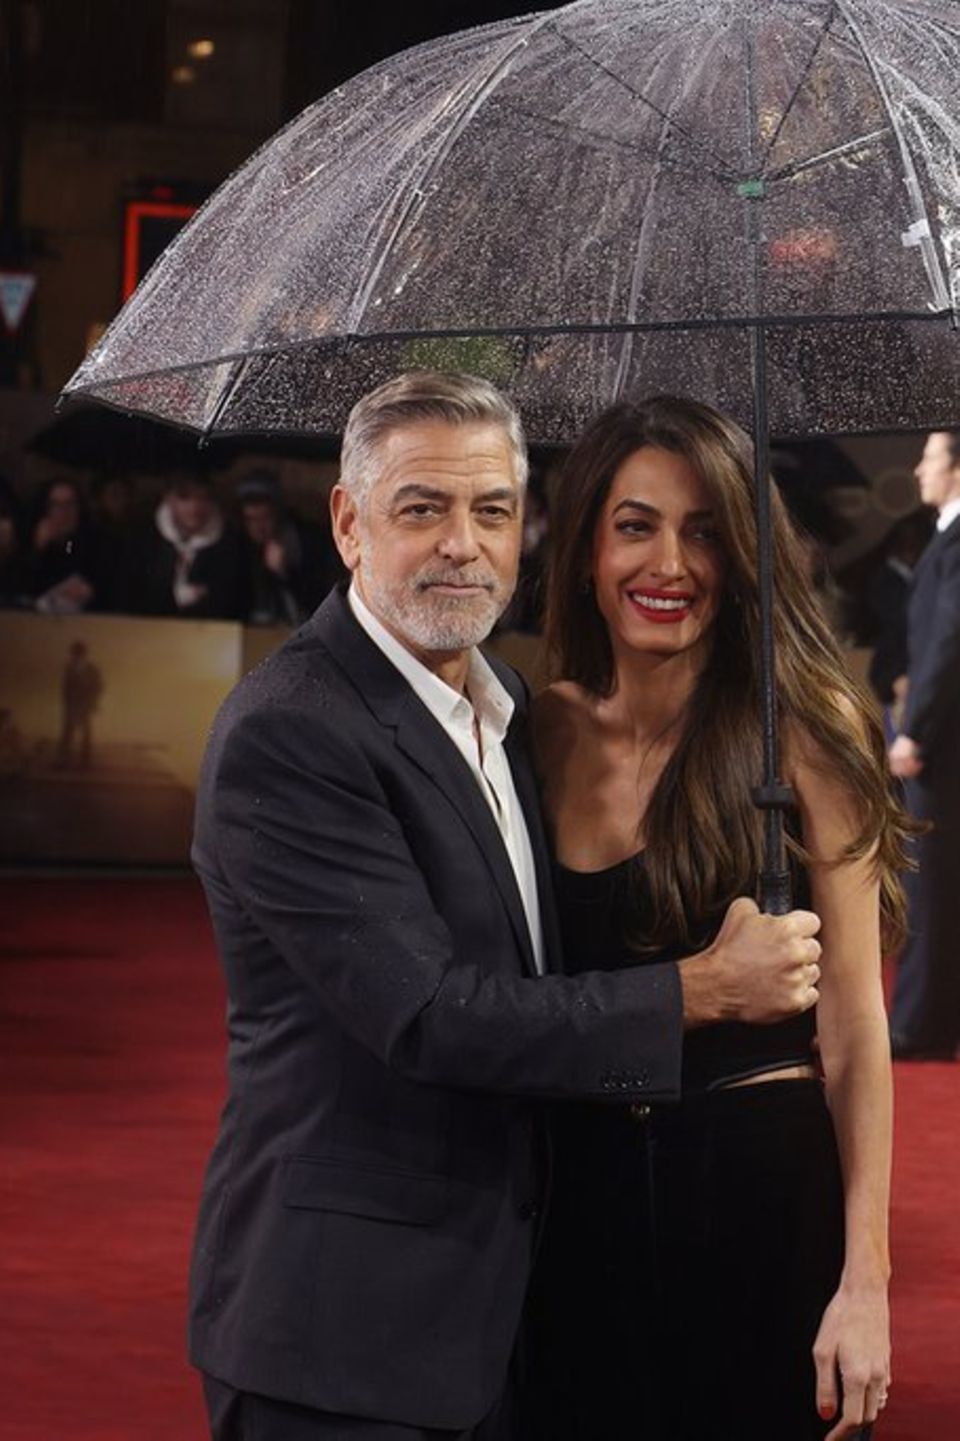 George und Amal Clooney mit Regenschirm in London.